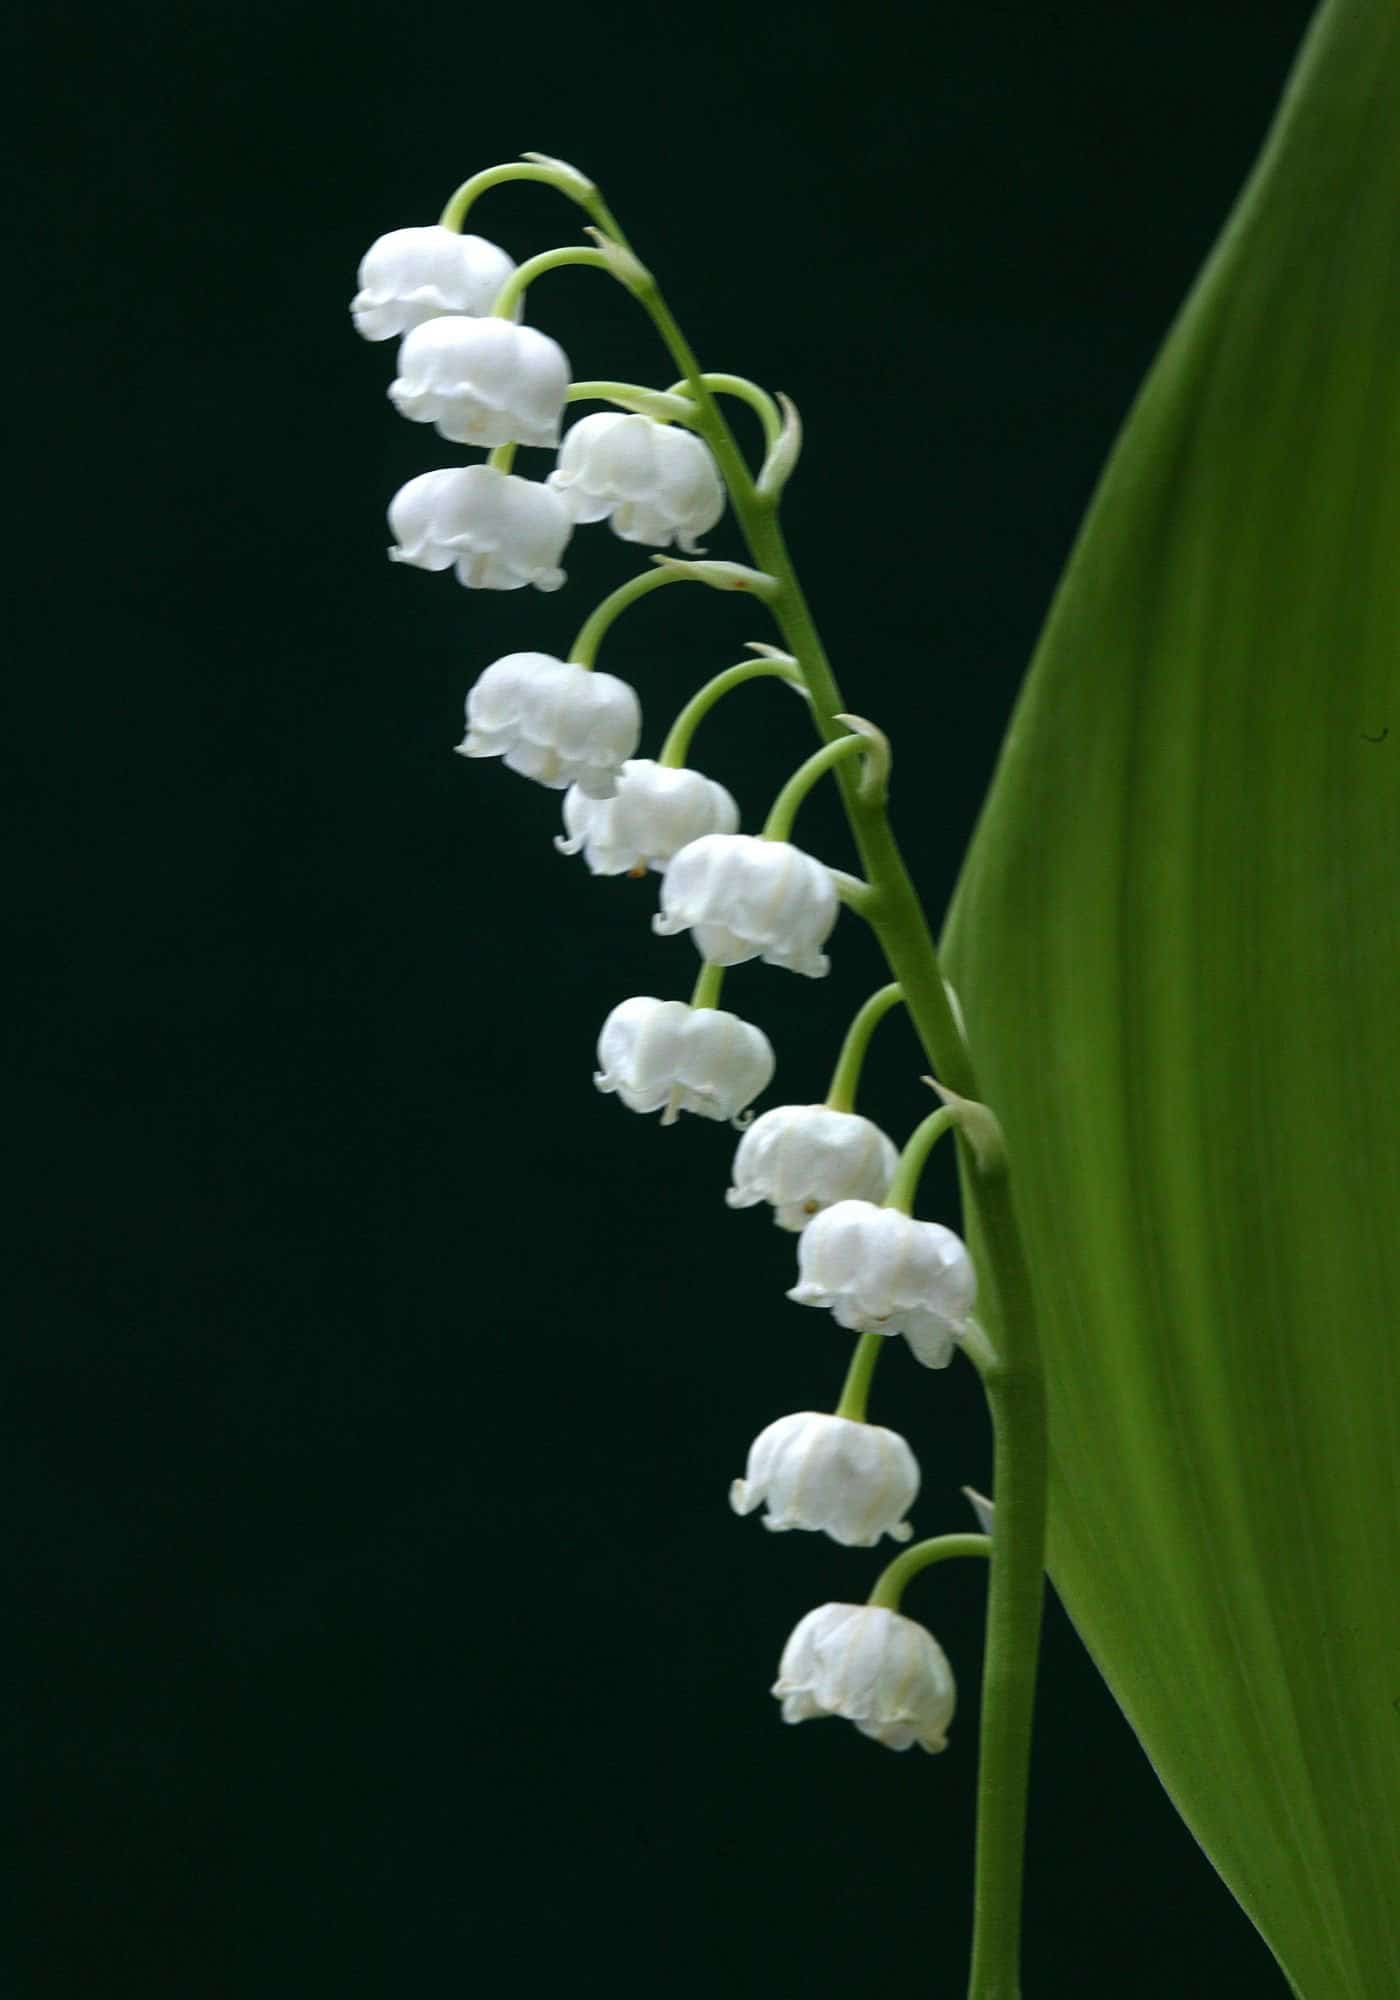 Elegant white bell shaped flowers